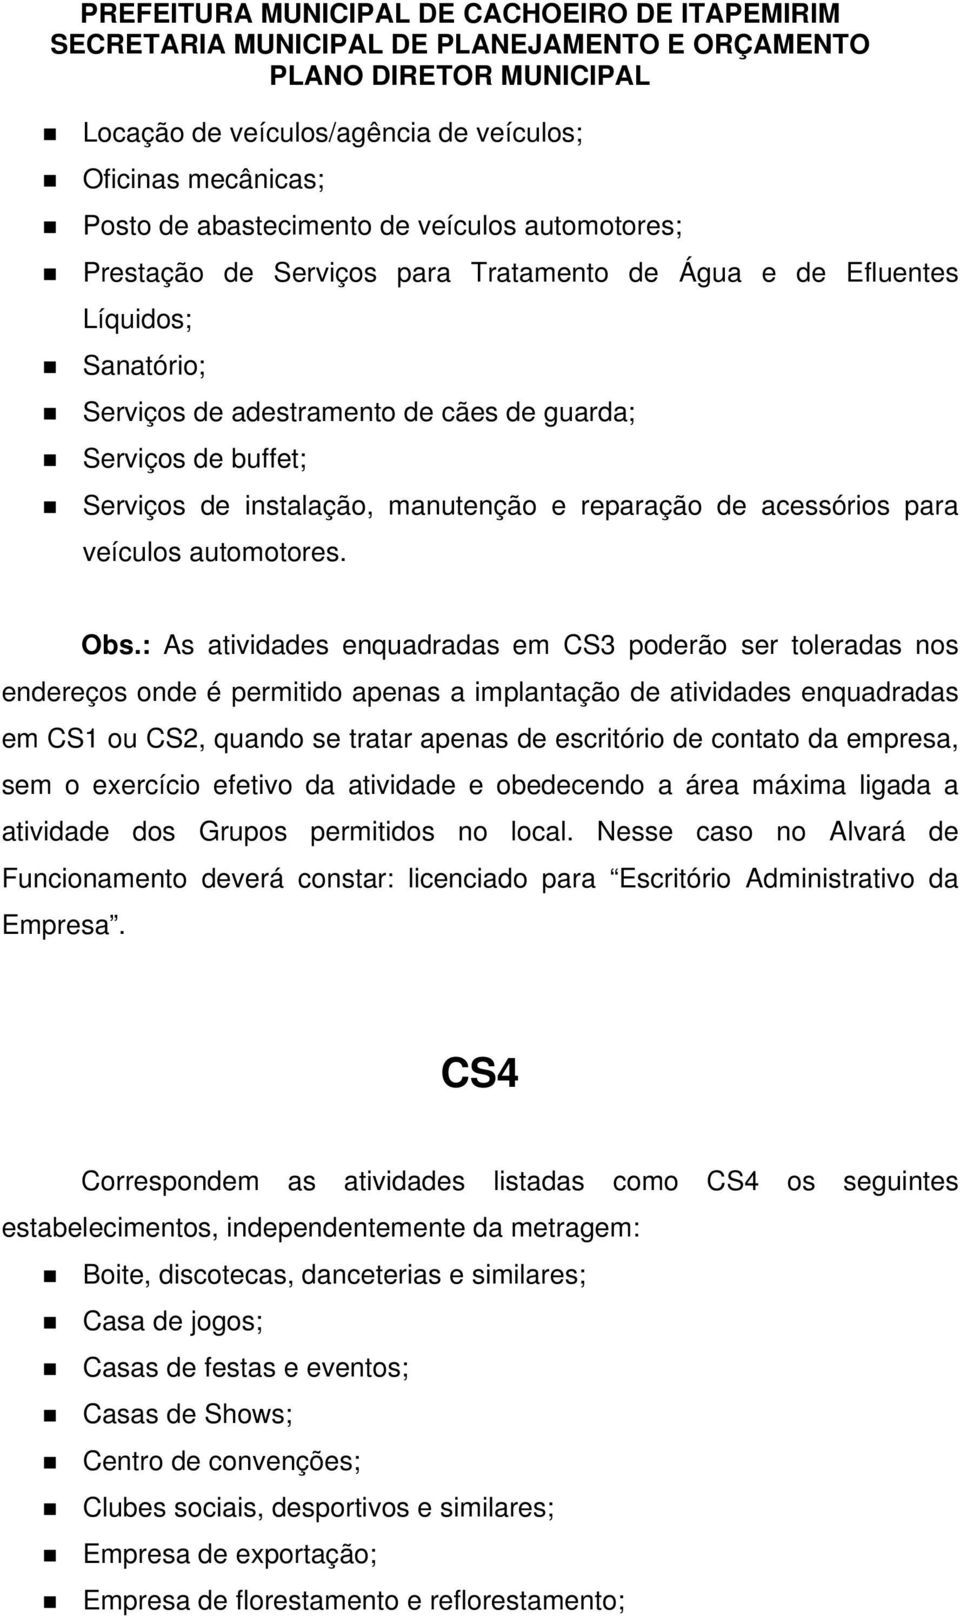 : As atividades enquadradas em CS3 poderão ser toleradas nos endereços onde é permitido apenas a implantação de atividades enquadradas em CS1 ou CS2, quando se tratar apenas de escritório de contato